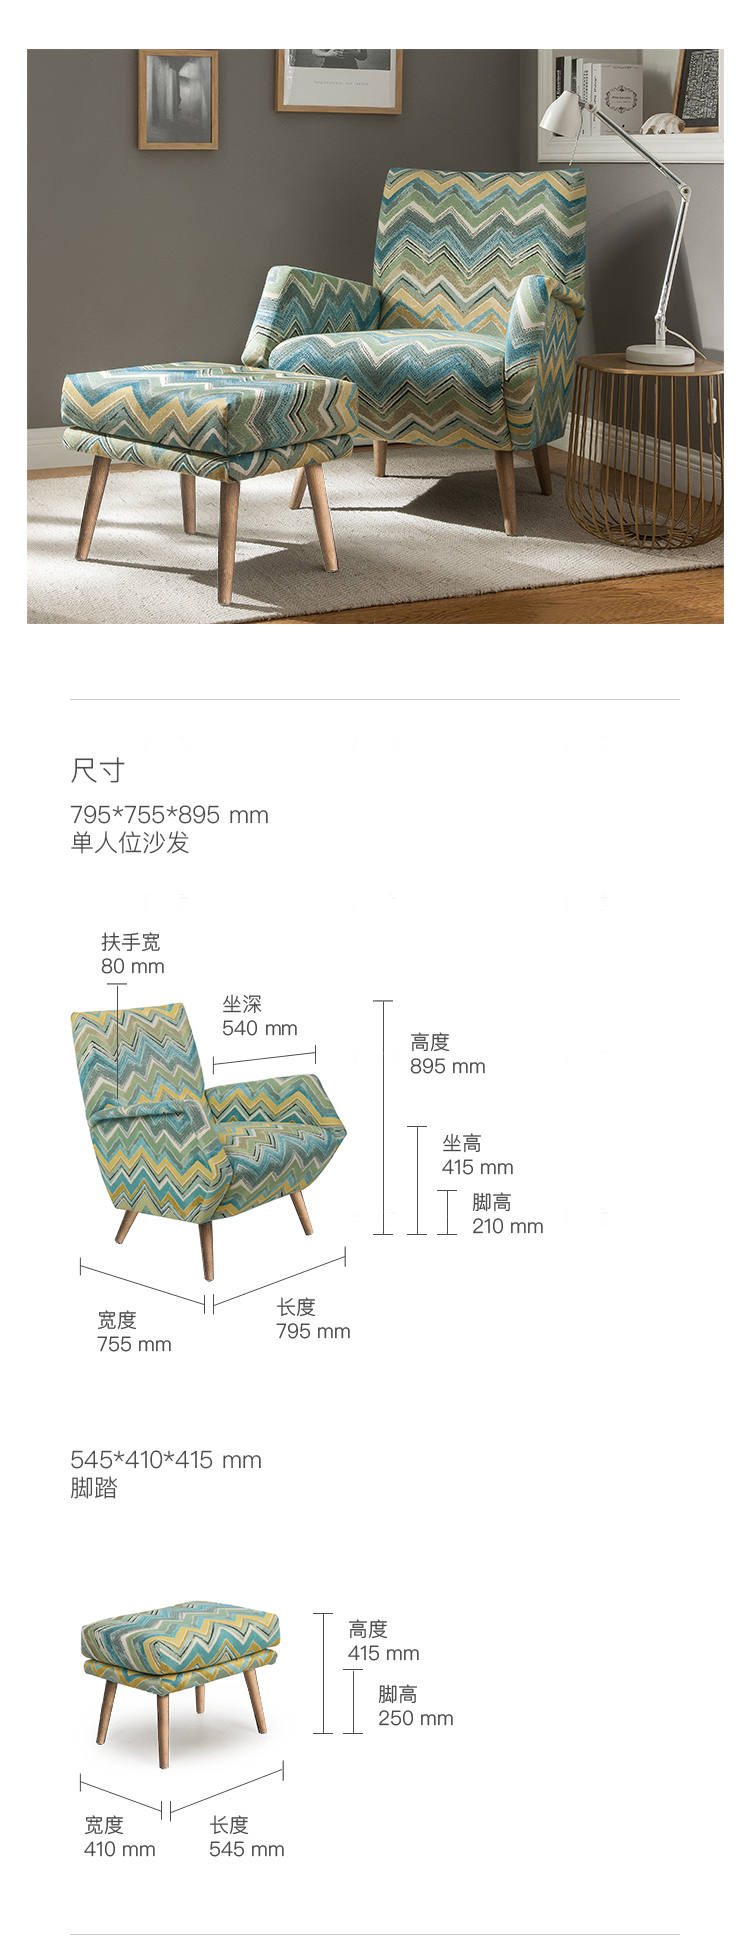 原木北欧风格未绪休闲椅的家具详细介绍